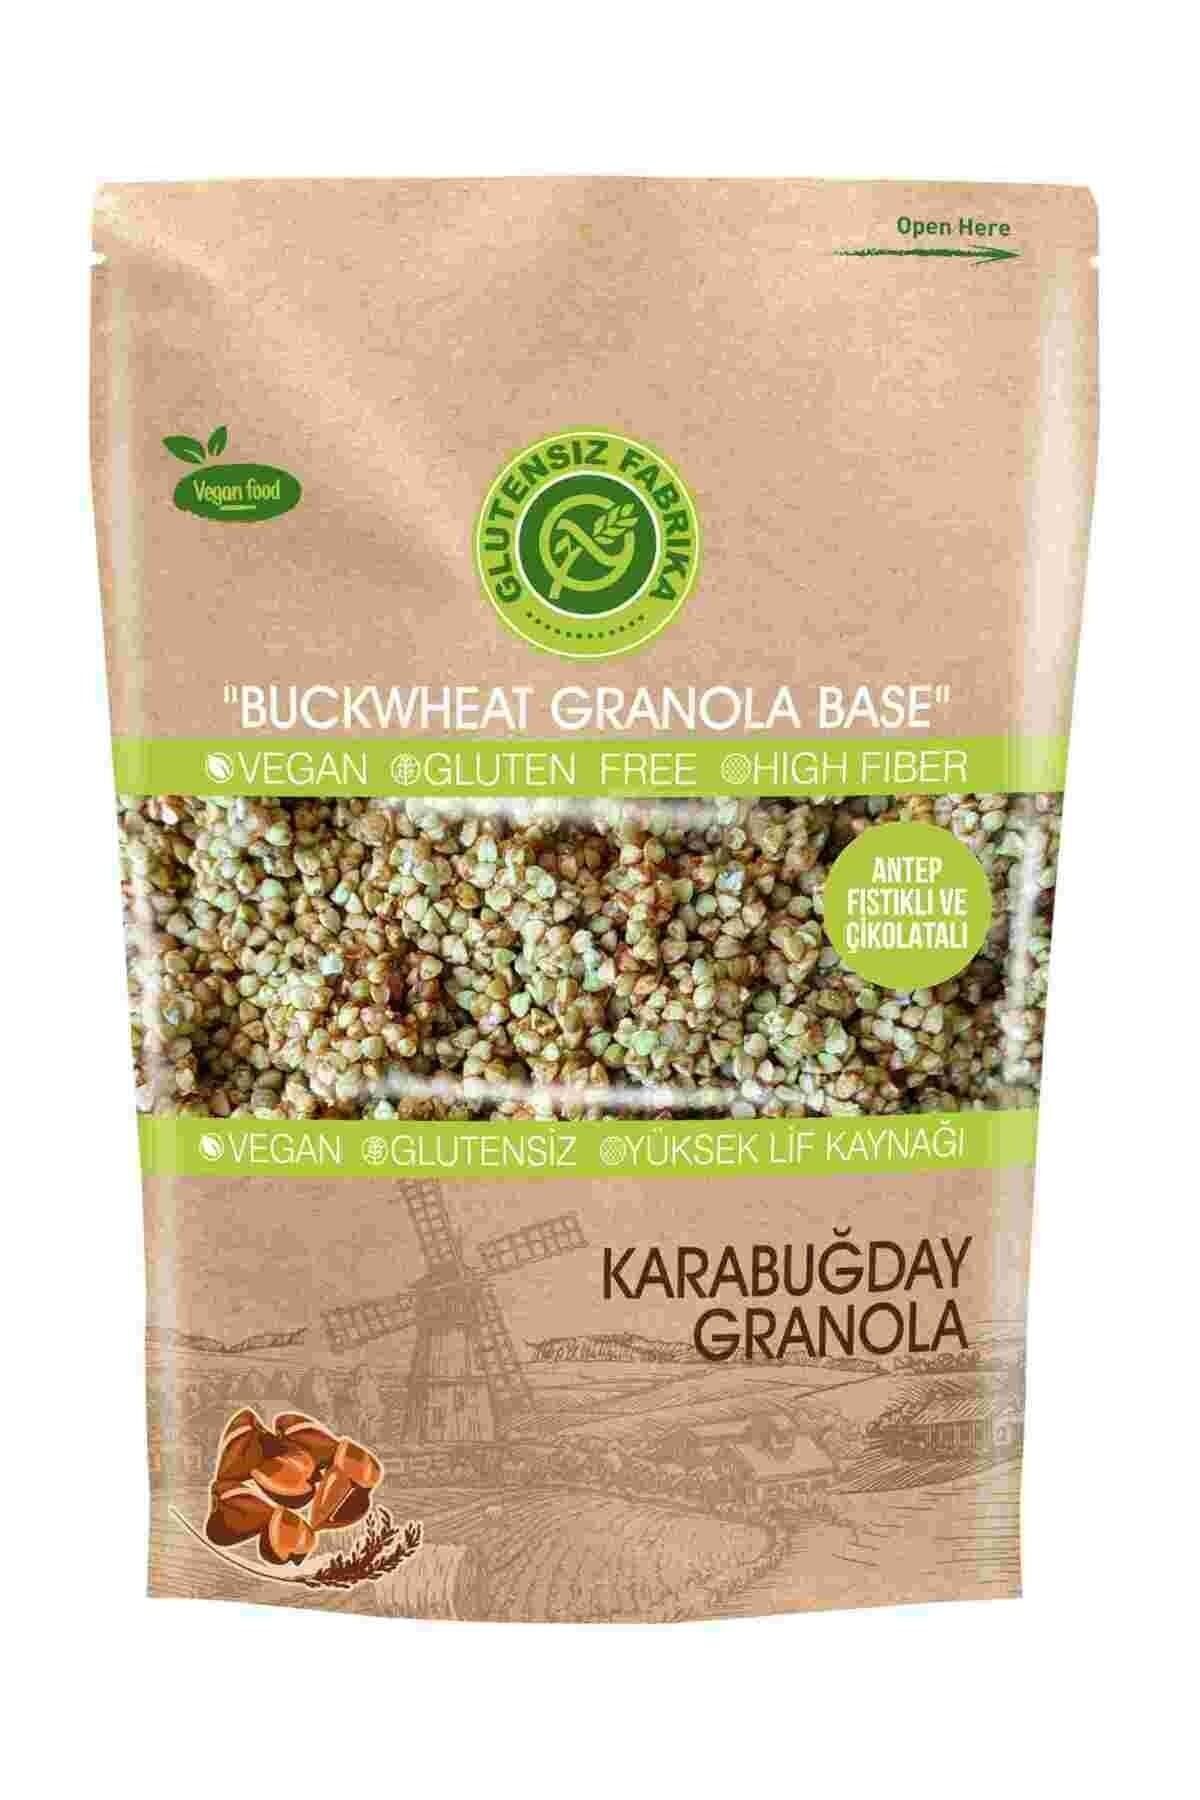 GLUTENSİZ FABRİKA Yulaf & Karabuğday Granola 300 Gram (antep Fıstıklı Ve Çikolatalı)